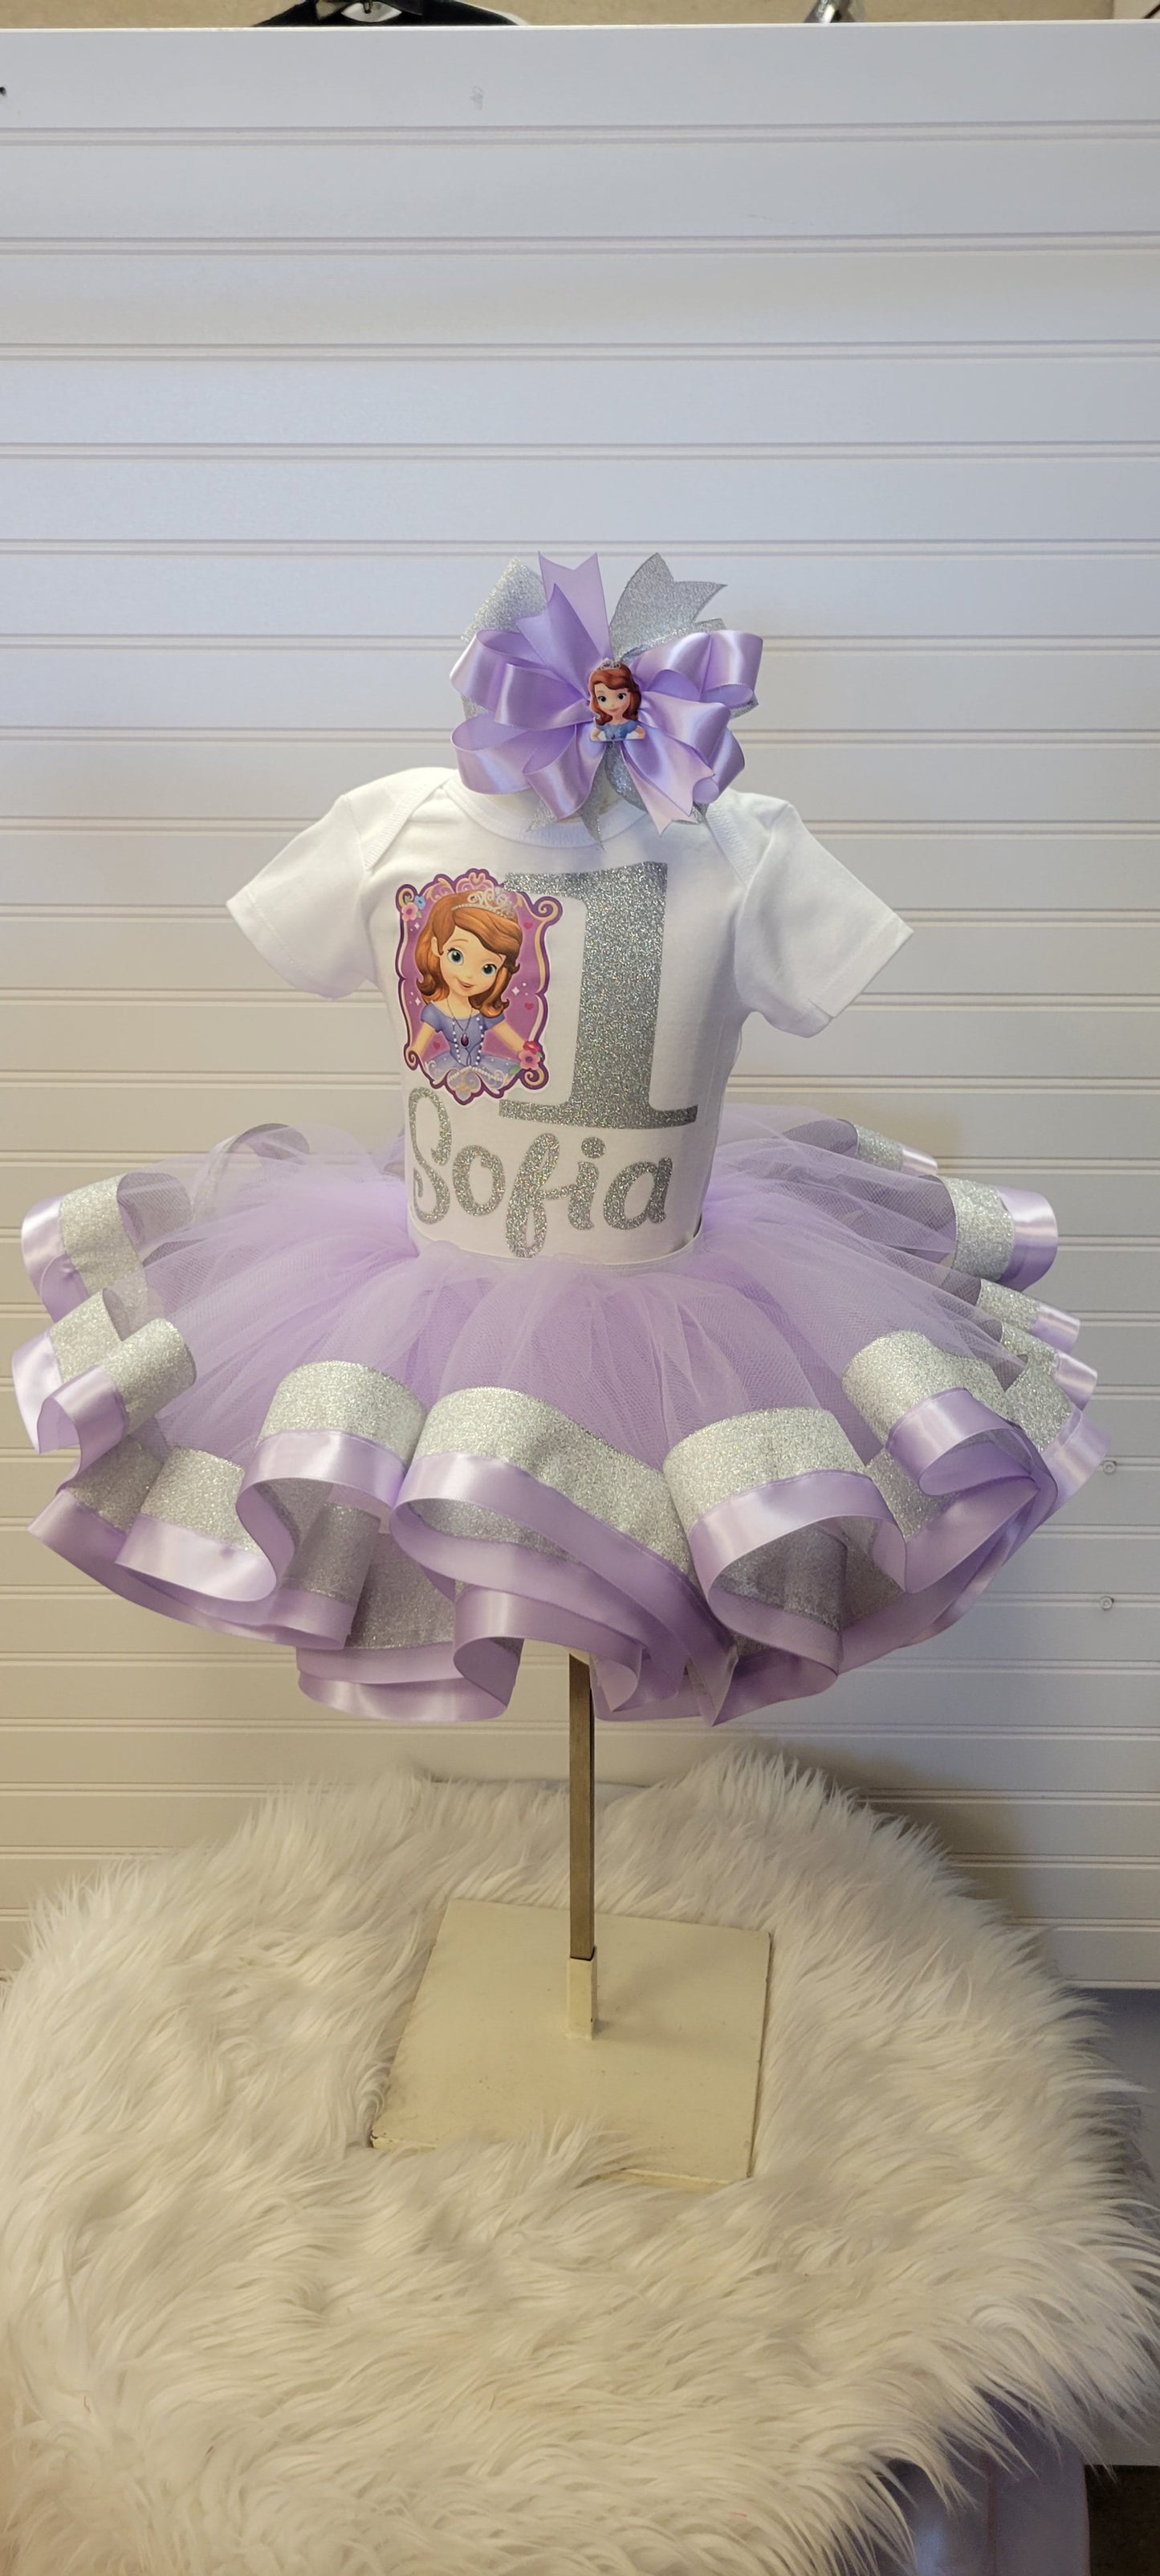 Princess Sophia Personalized Tutu Outfit